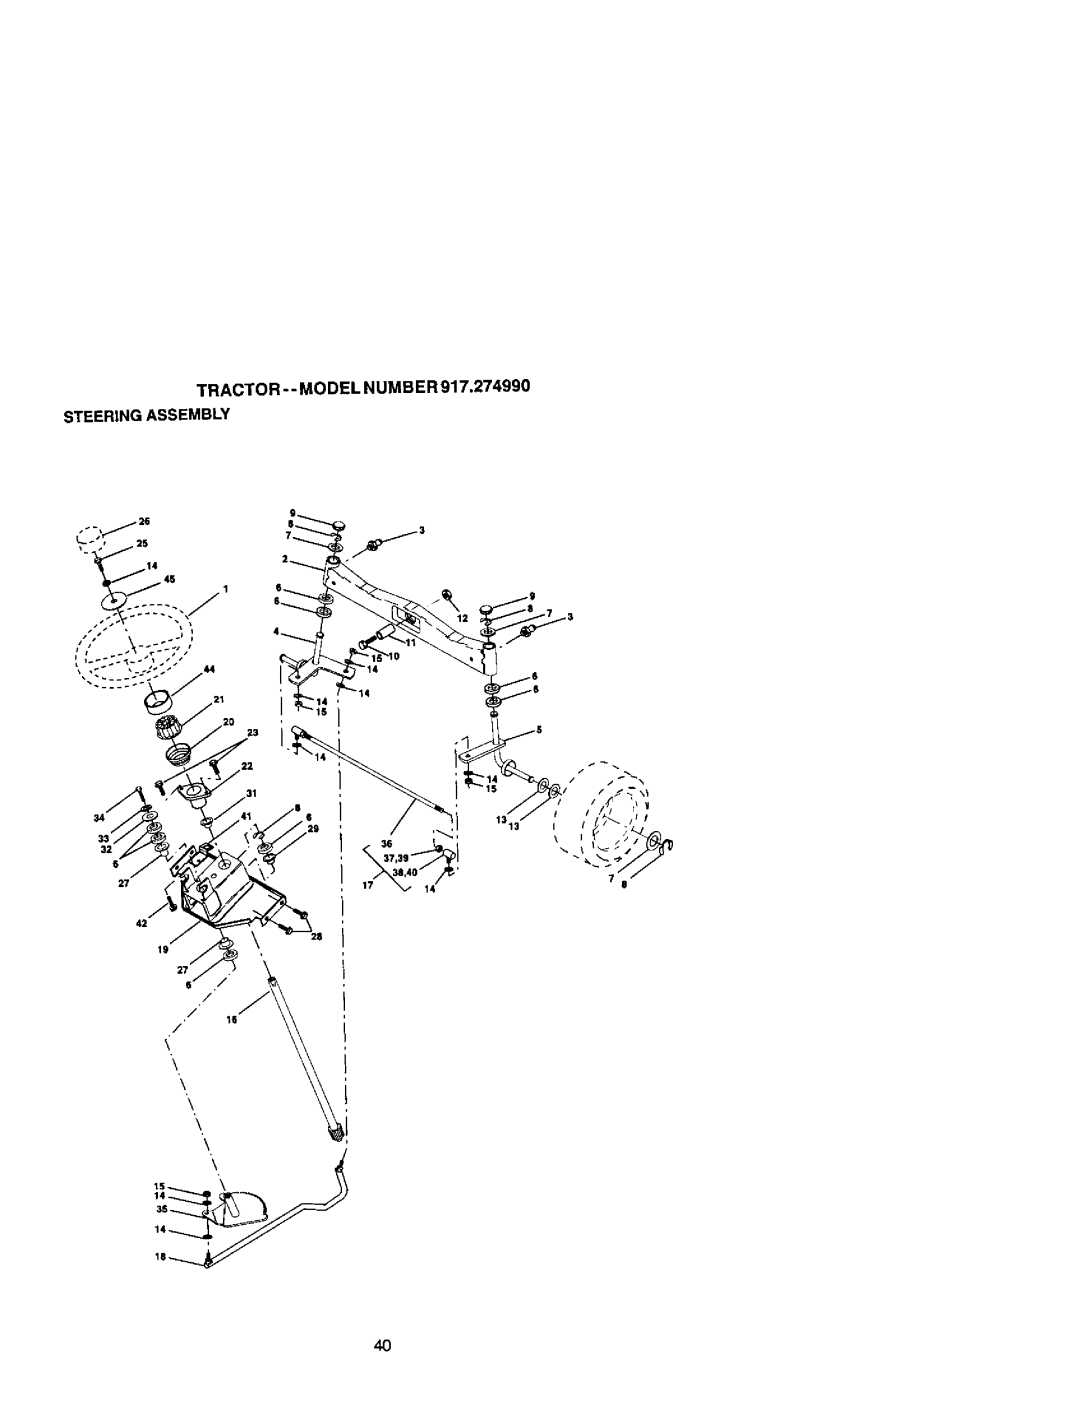 Craftsman 917.27499 manual Tractor- - Model Numb Er Steeringassembly 